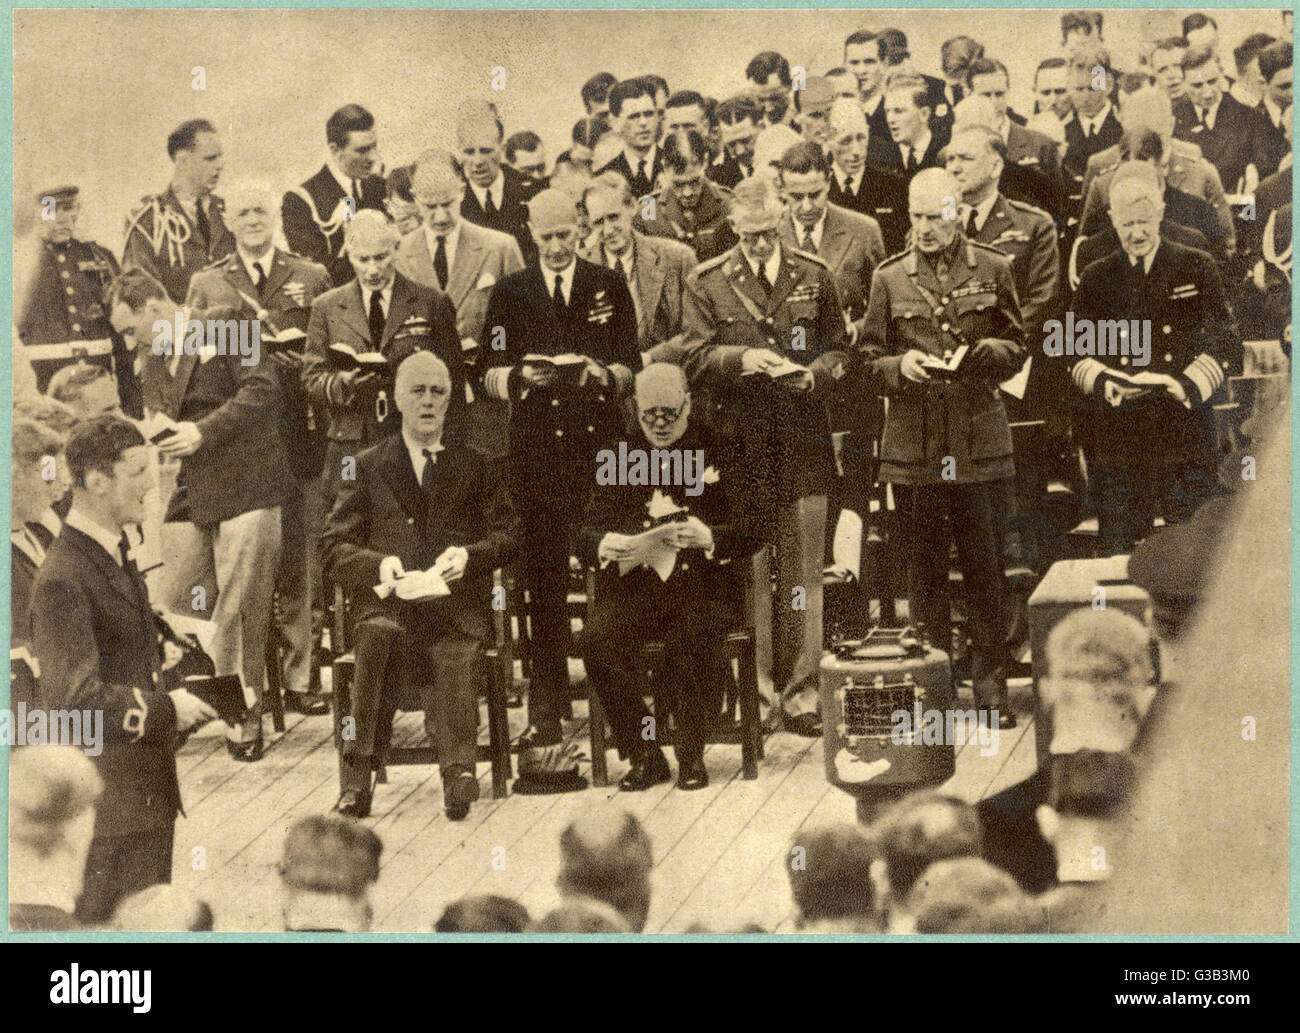 ATLANTIC MEETING 1941 Stock Photo